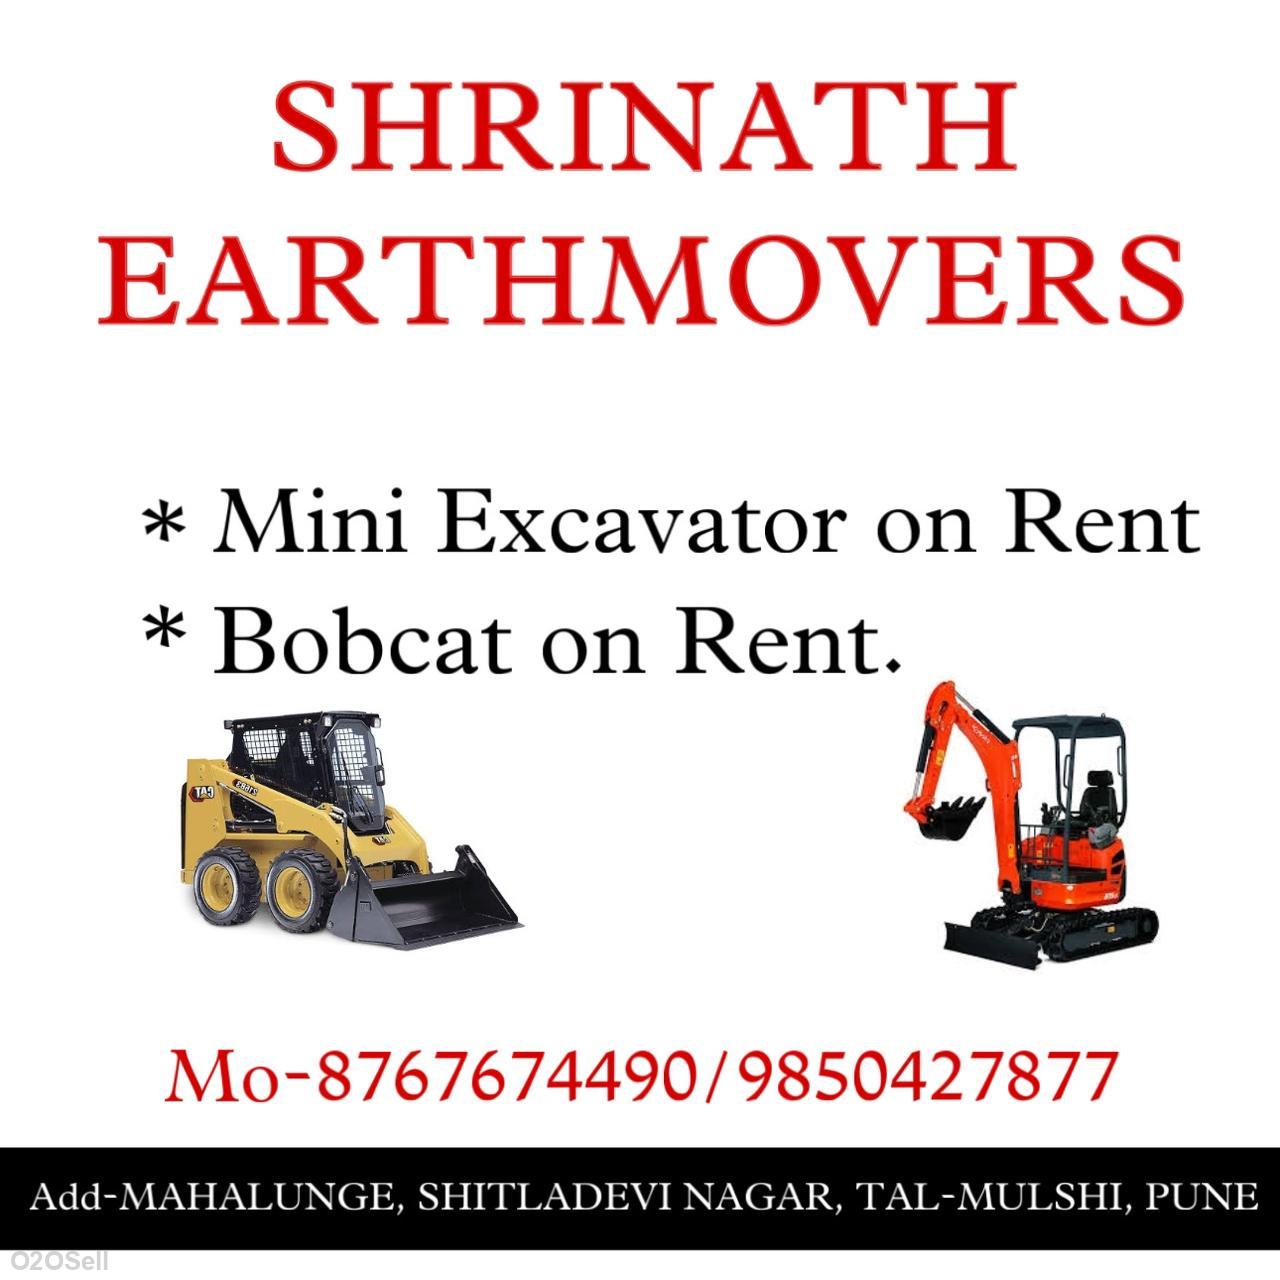 Shrinath Earthmovers - Profile Image